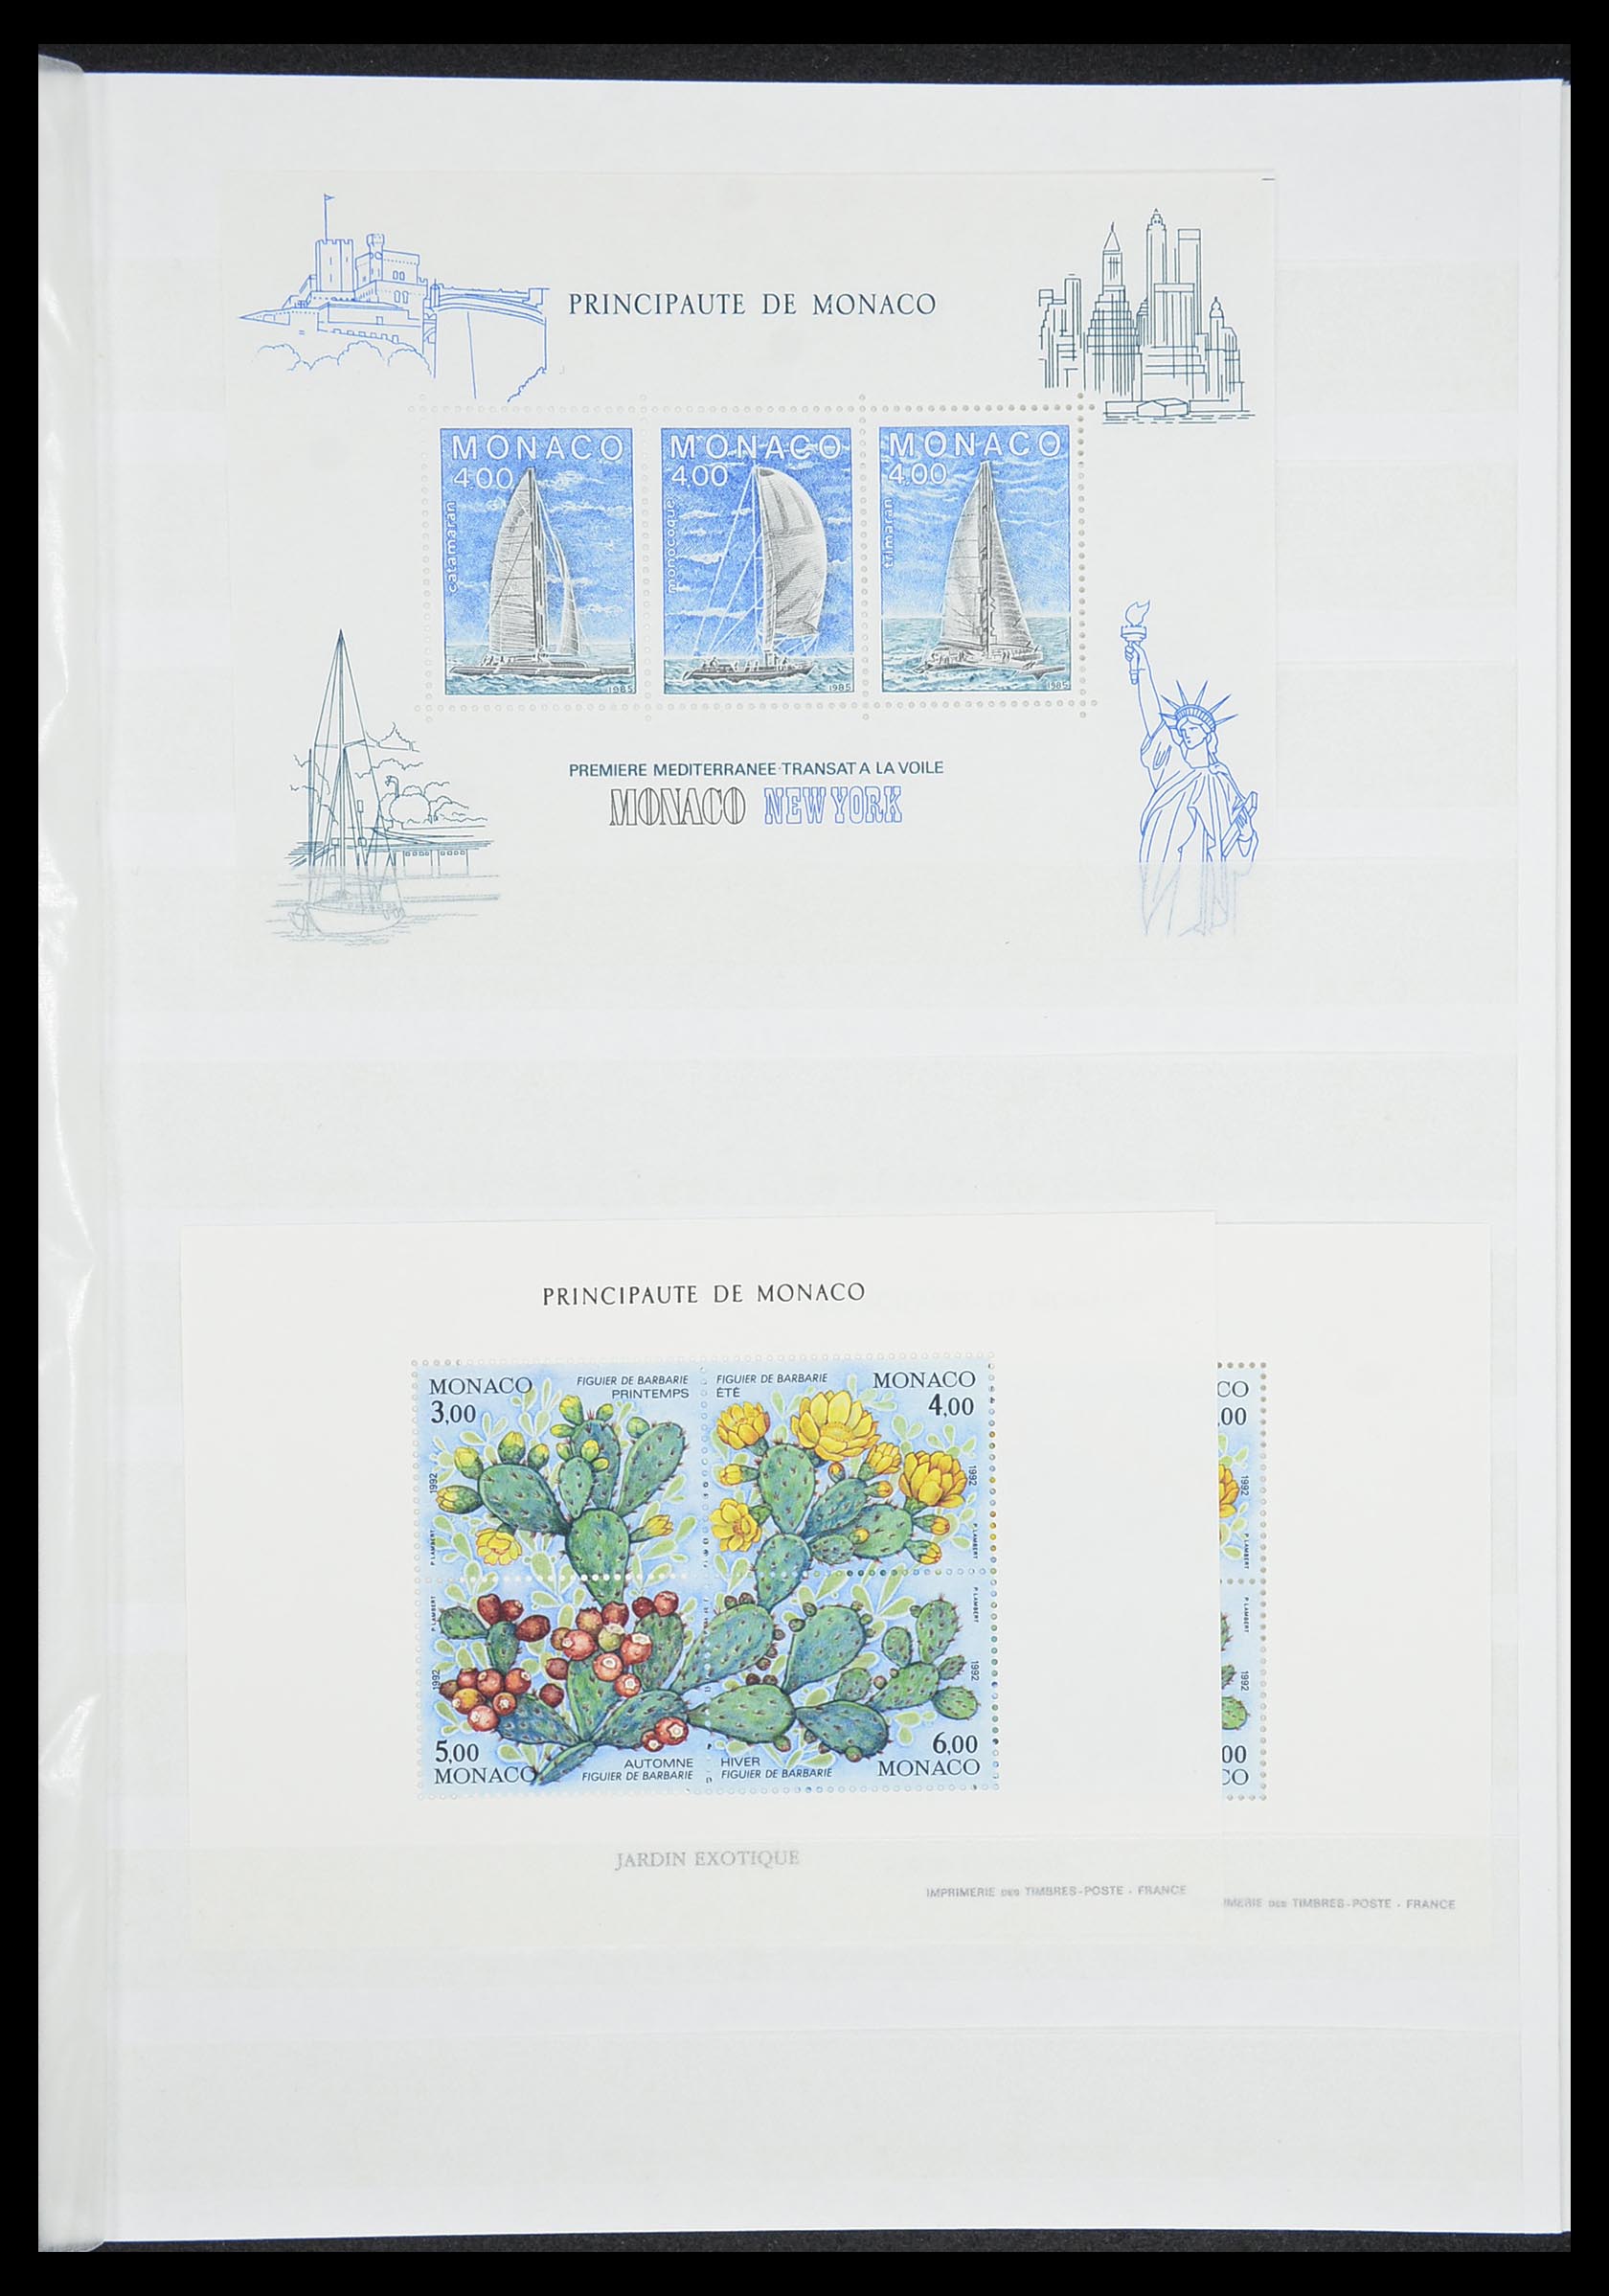 33833 017 - Stamp collection 33833 Monaco souvenir sheets 1979-2015.